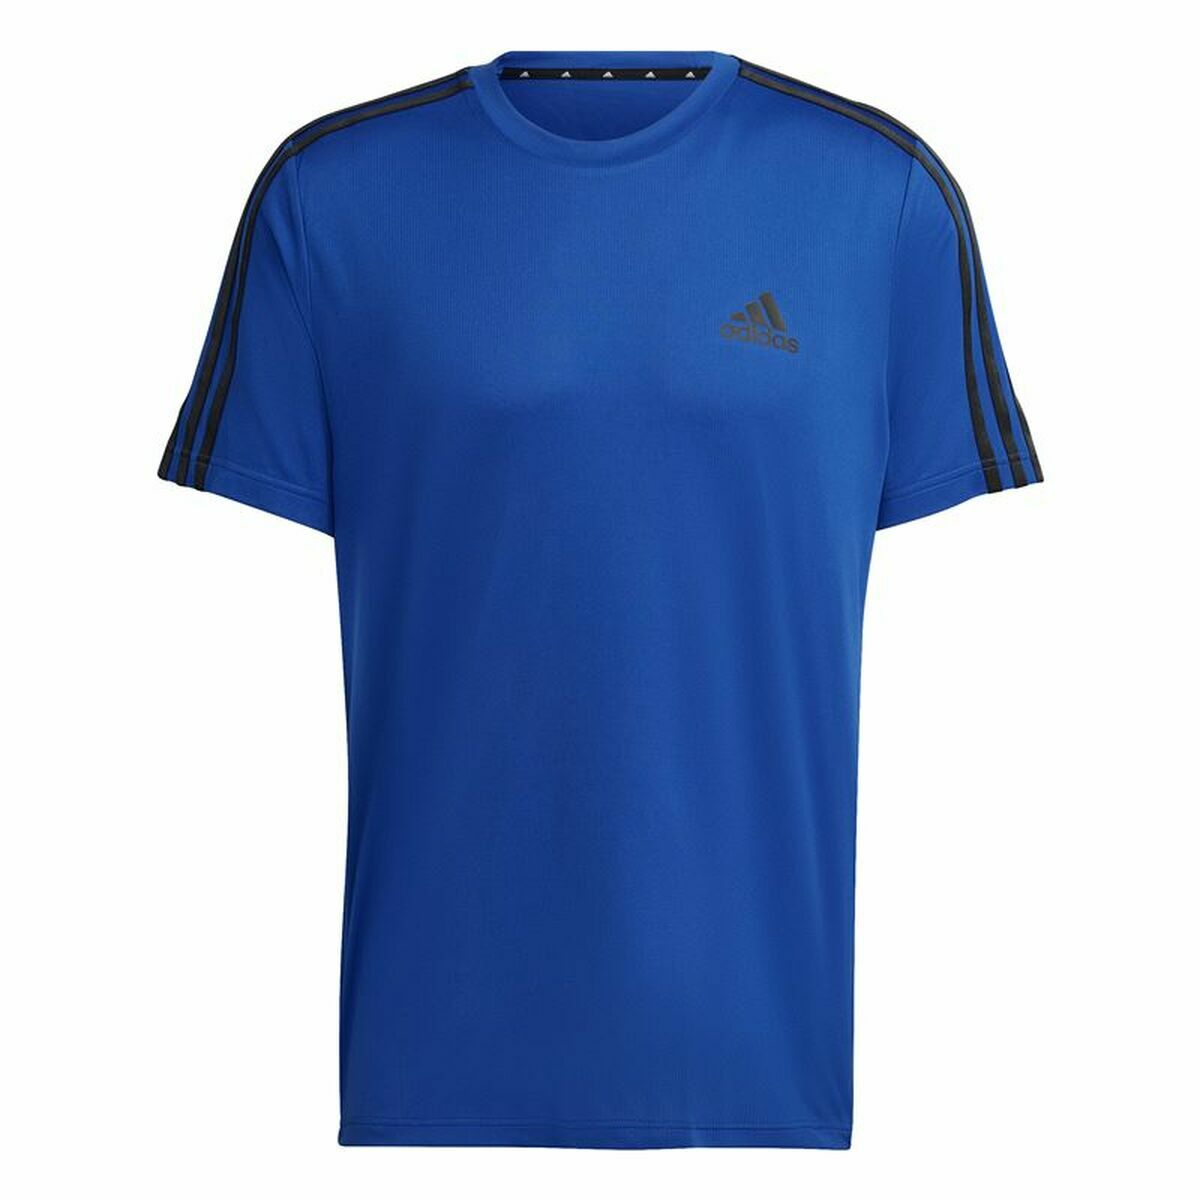 Osta tuote Miesten T-paita Adidas Aeroready Designed To Move Sininen (Koko: S) verkkokaupastamme Korhone: Urheilu & Vapaa-aika 20% alennuksella koodilla VIIKONLOPPU